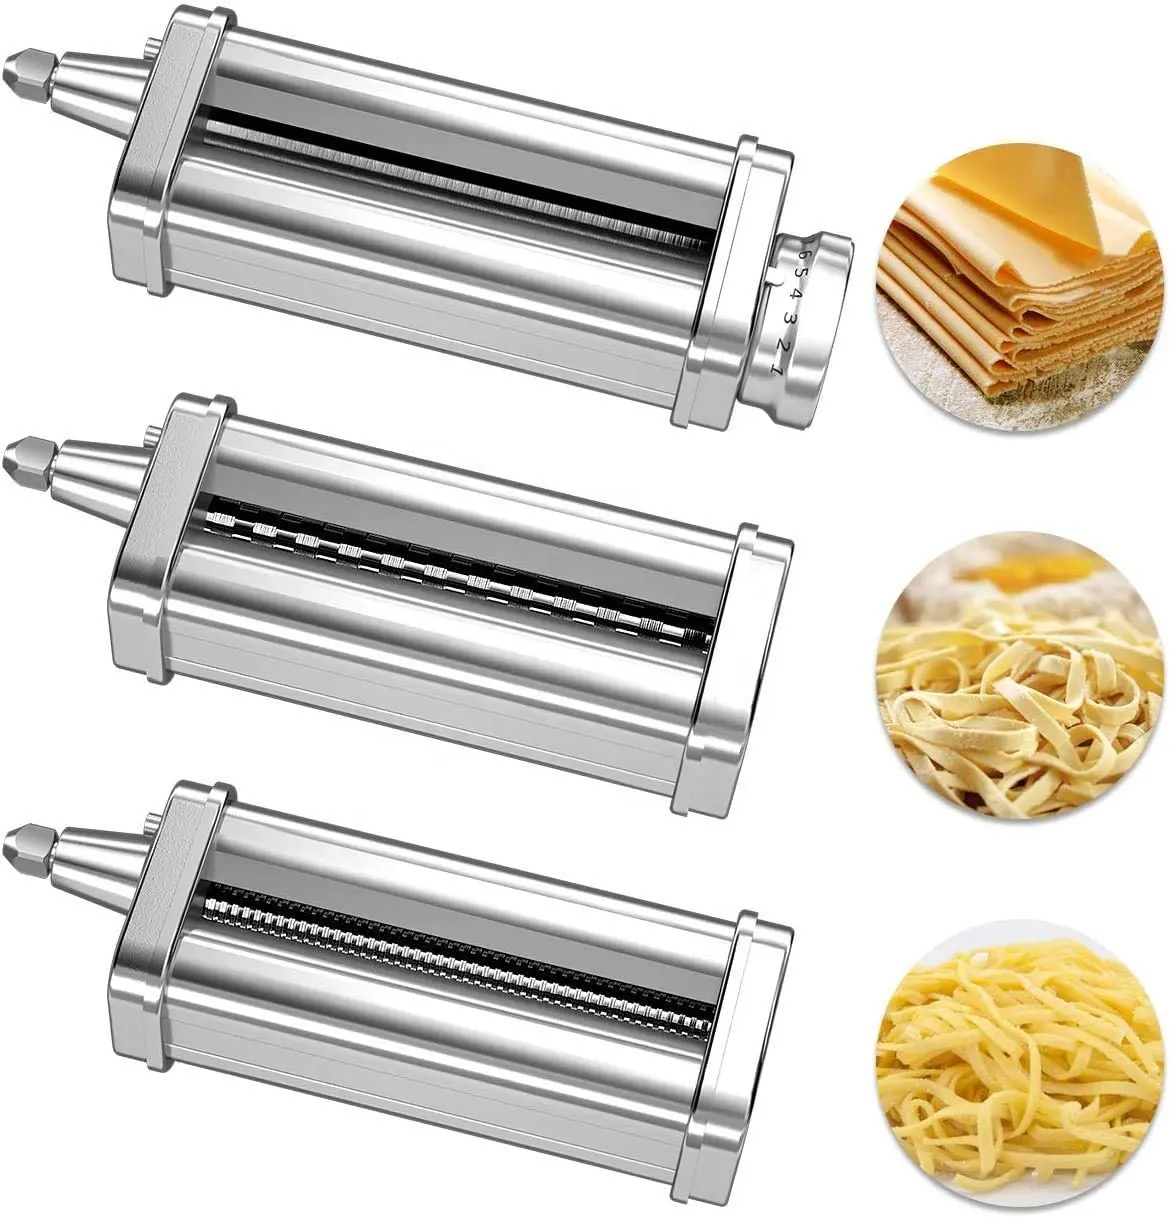 Accessoires kitchenaid Pasta Maker Food Processor HHauswirt Pasta roller fettucine cutter attachment kitchenaid accessories